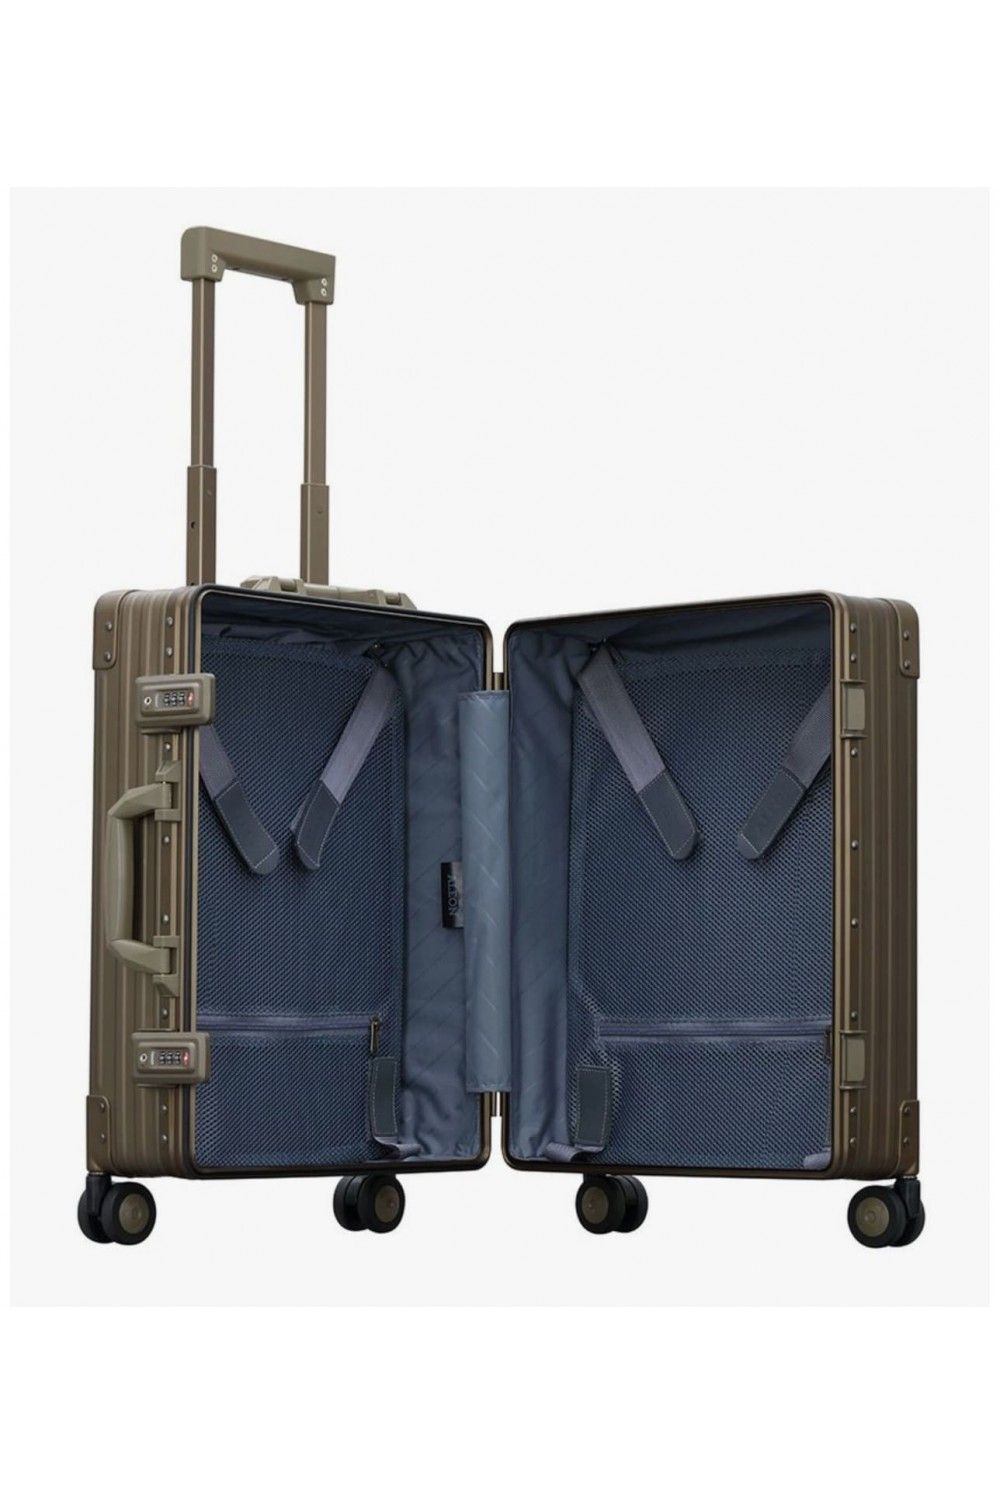 Handbag Alu Case Aleon 53cm 4 wheel